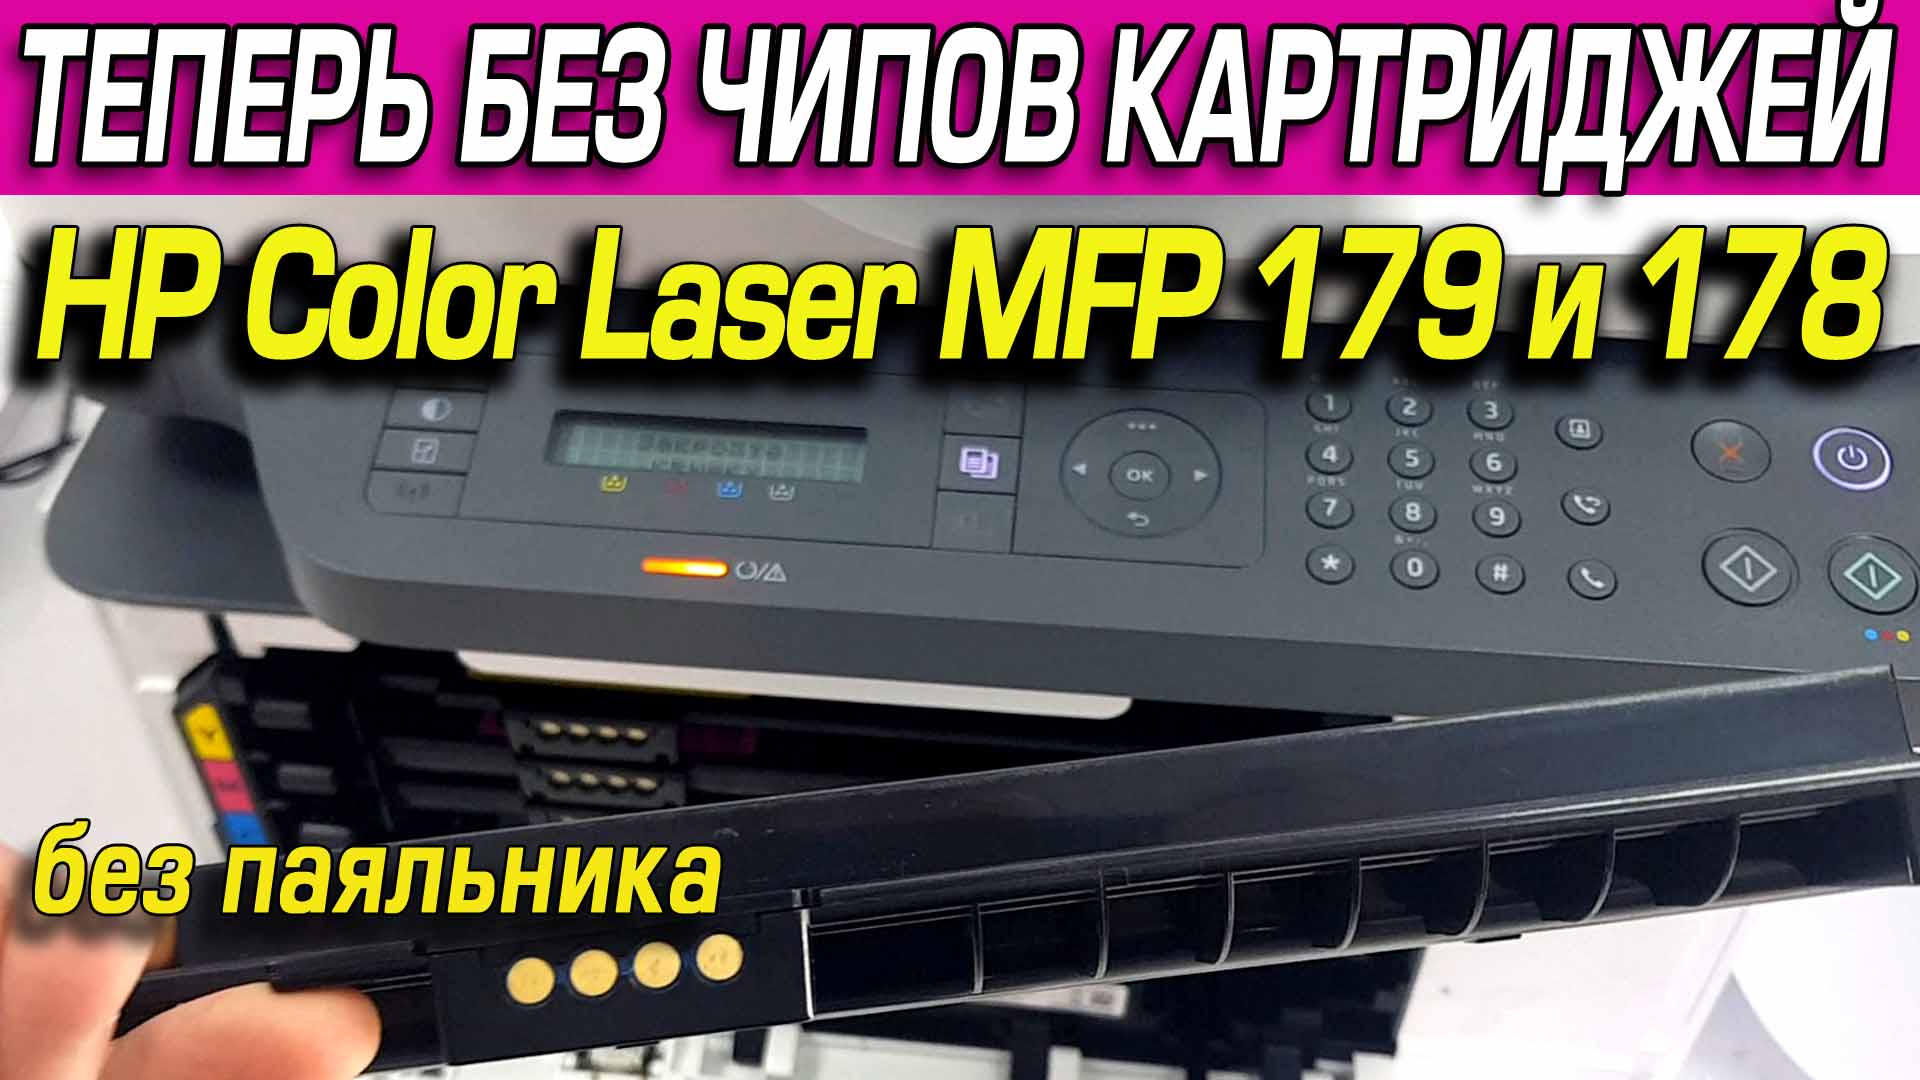 Прошивка принтера HP Color Laser MFP 179 и 178. Зачем? Как? Инструкция. Видео.